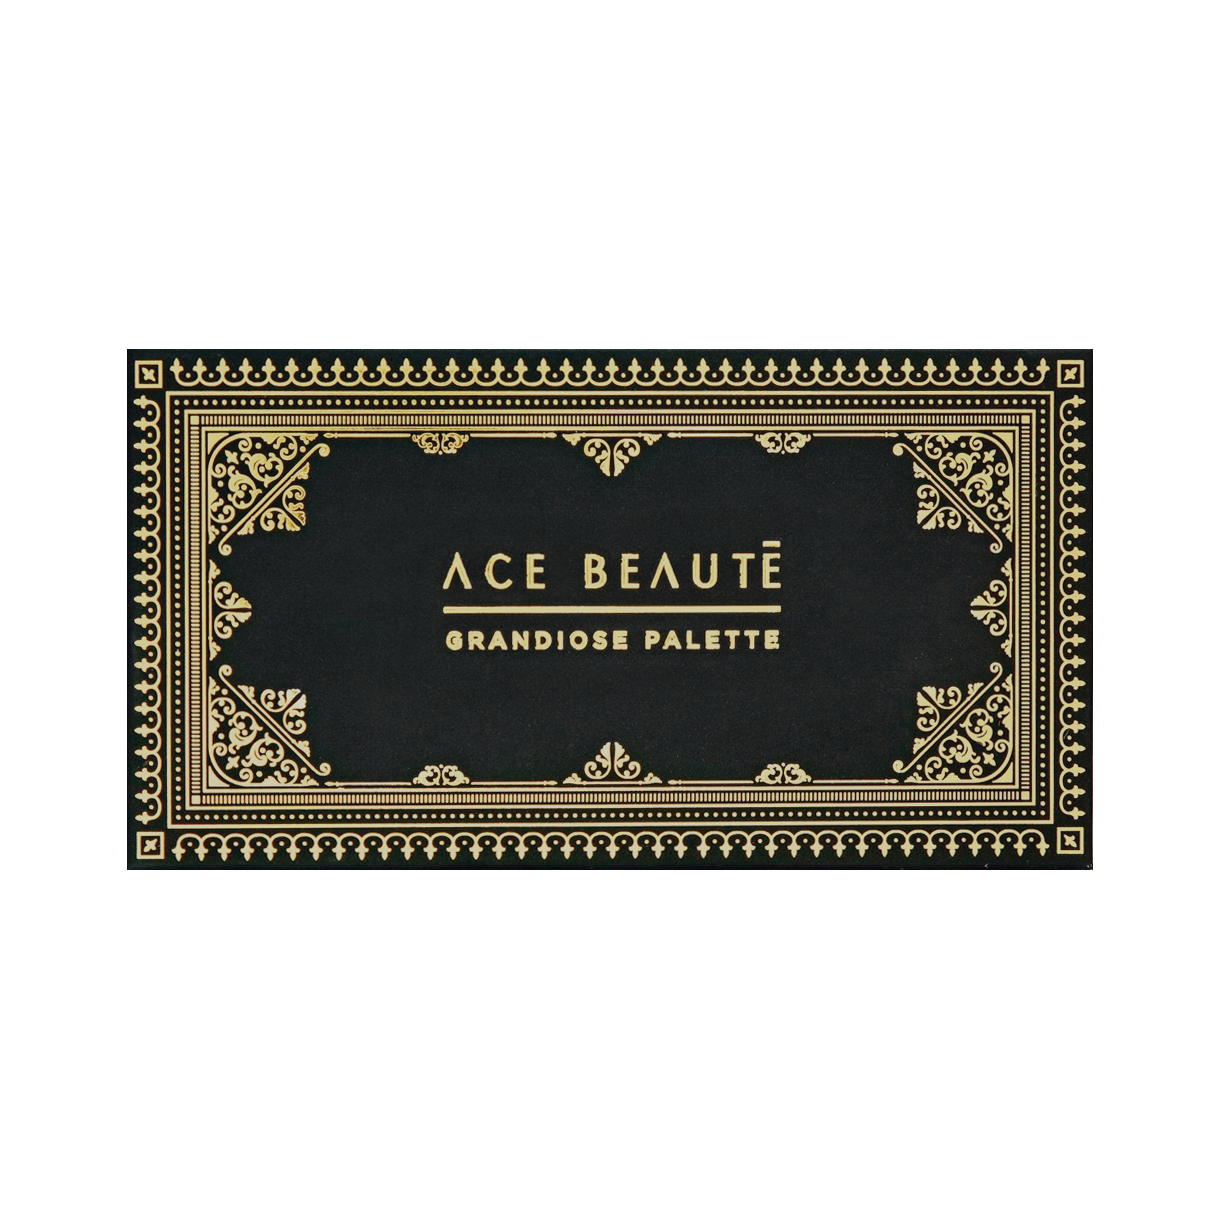 Ace Beaute - Grandiose Palette